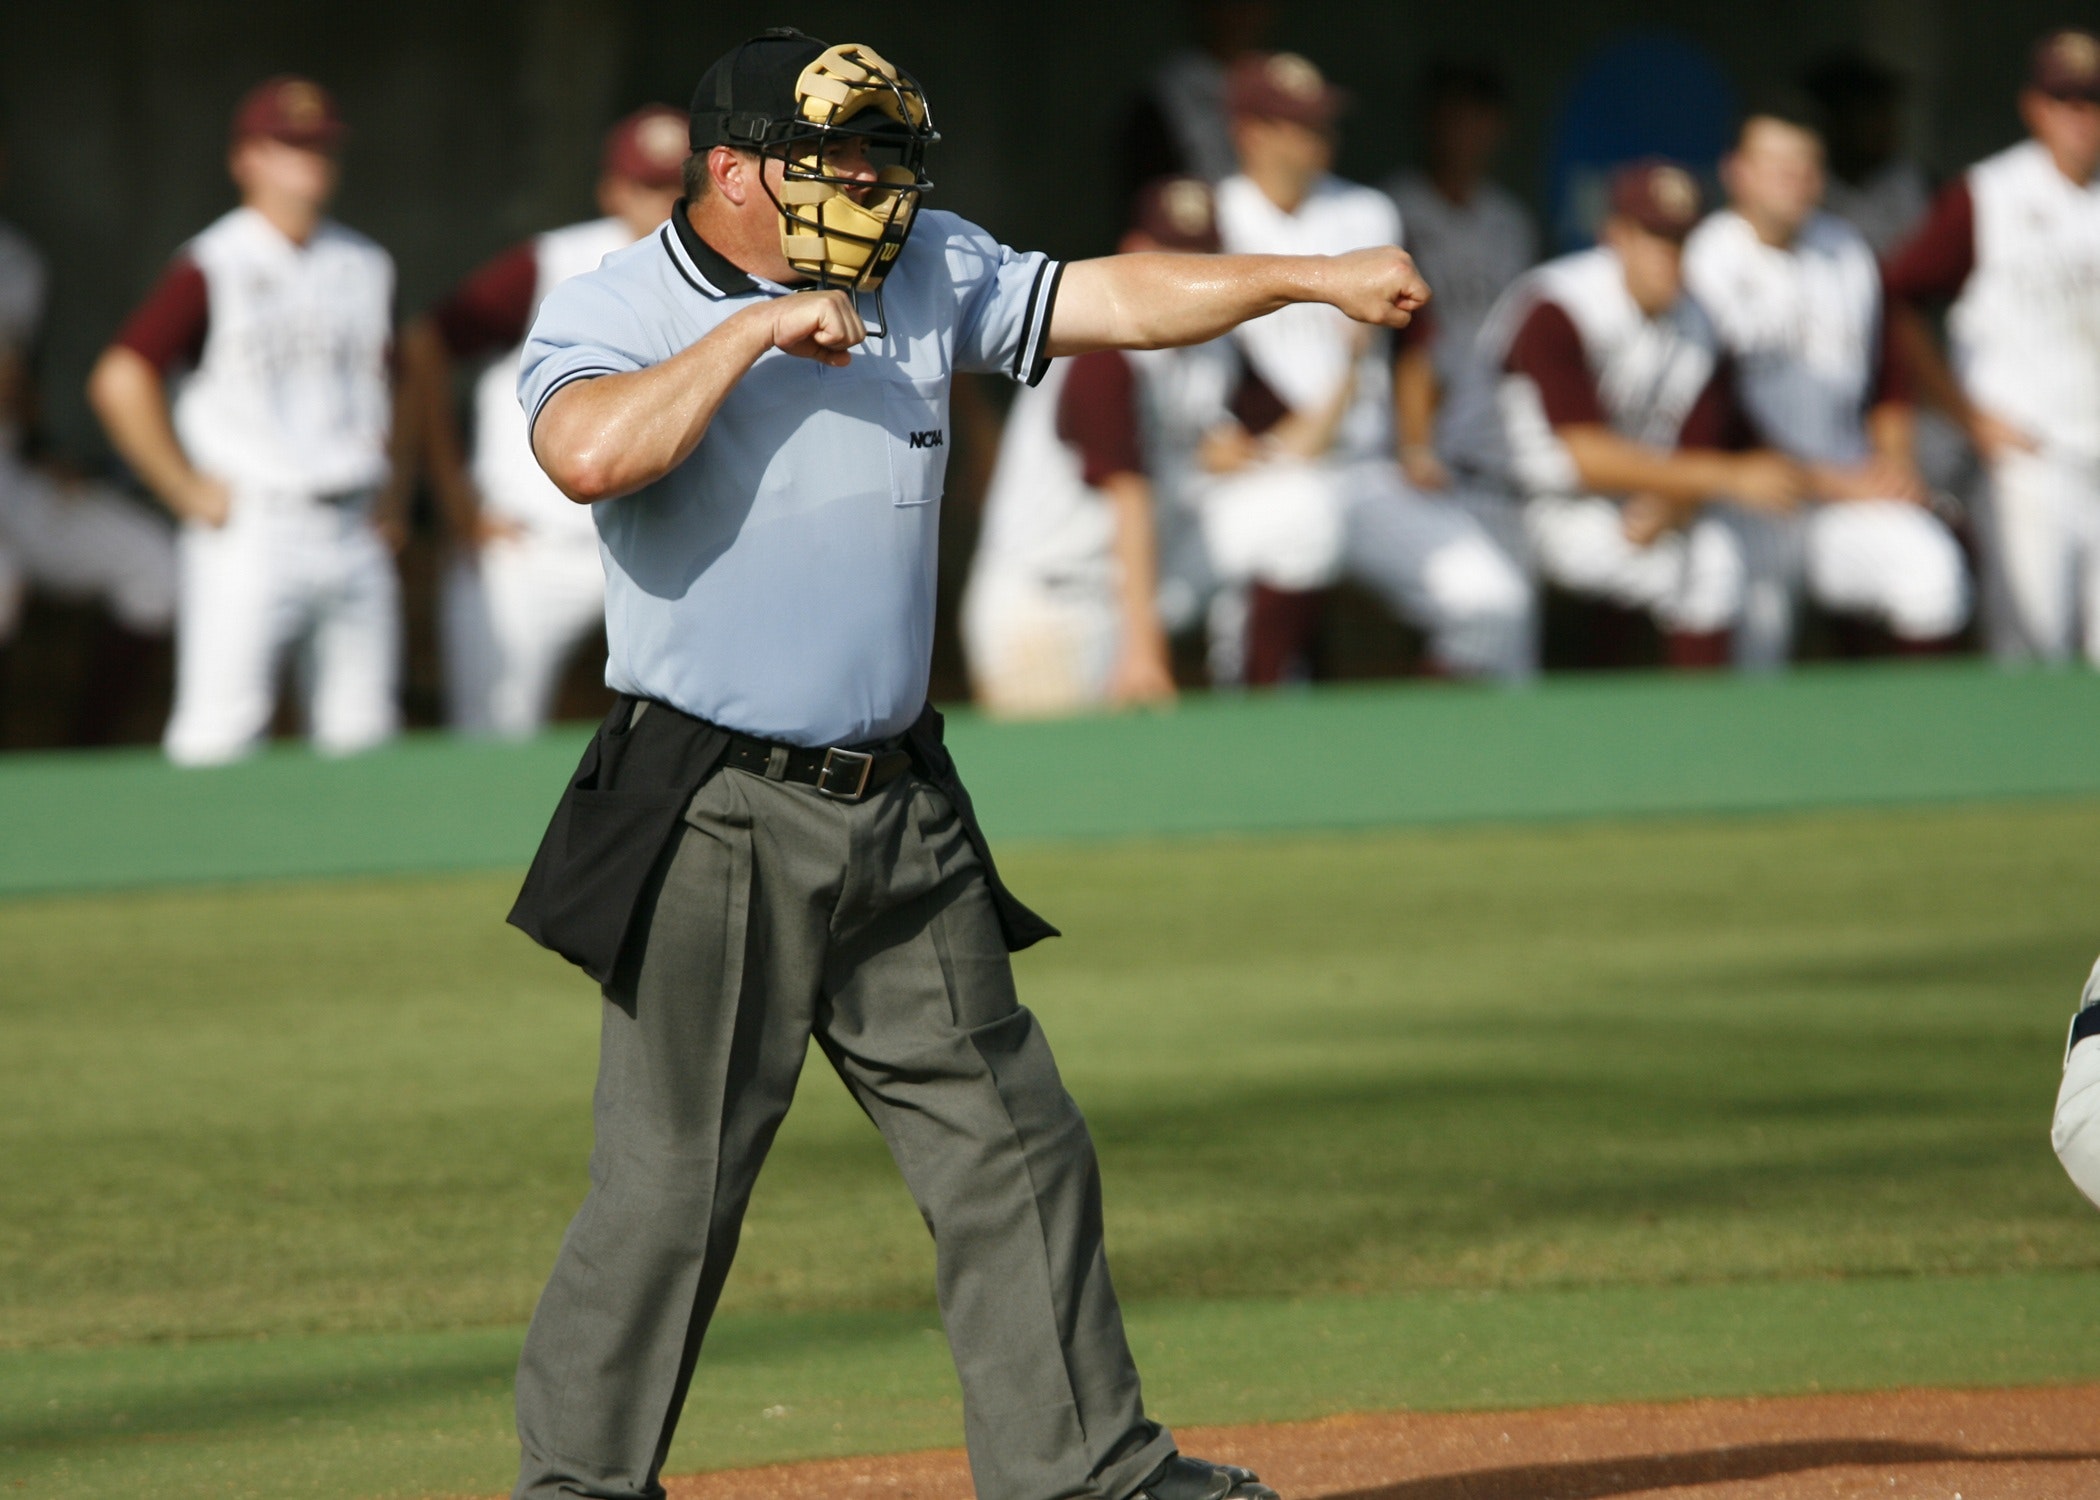 baseball referee uniform